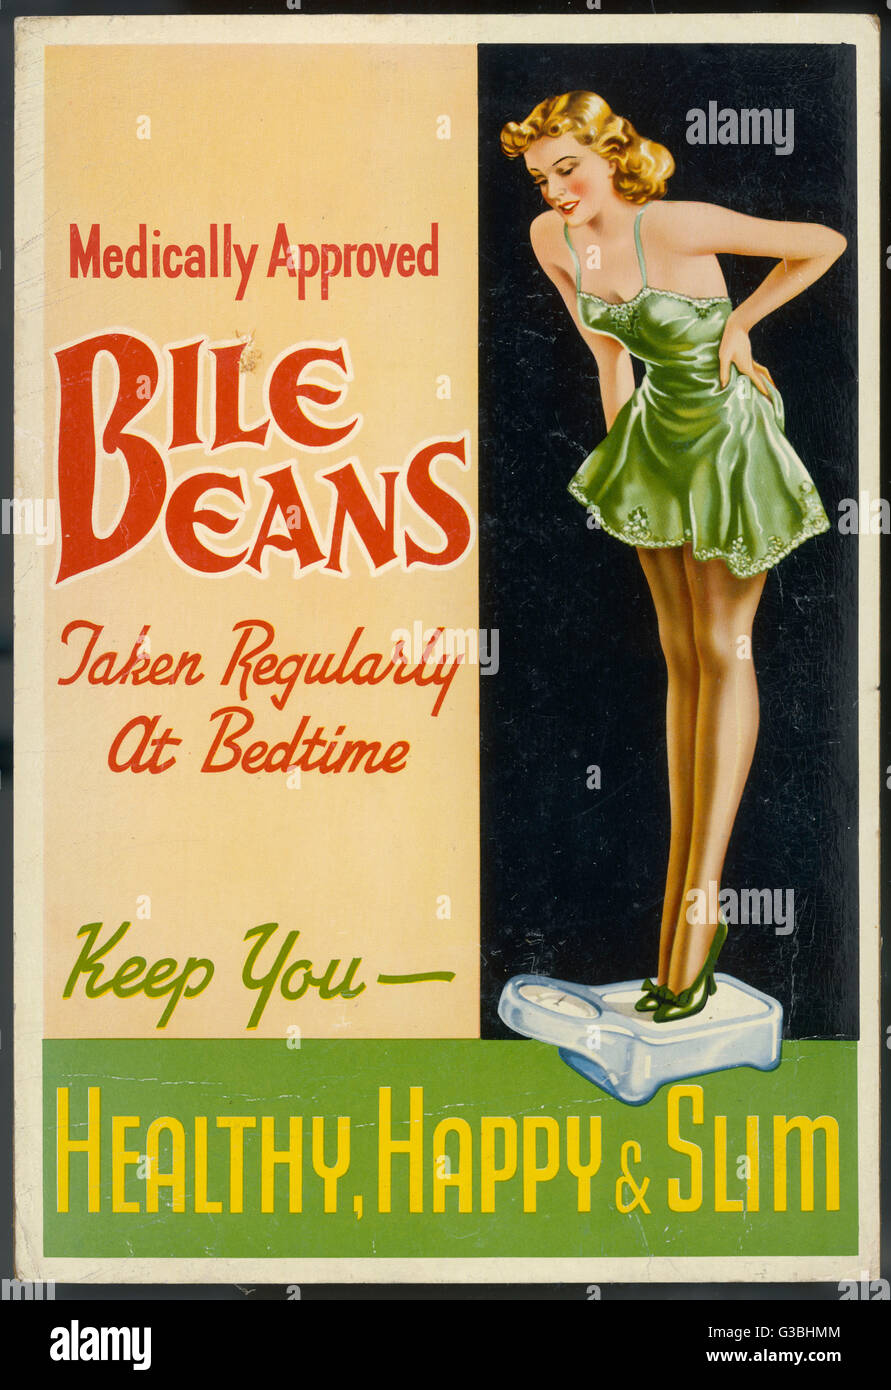 Eine Dame in ihren Slip wiegt sich und ist erfreut feststellen, dass ihr vor dem Schlafengehen Behandlung von Galle Bohnen (igitt!) sie gesund, glücklich und schlank hält.      Datum: 1940er Jahre Stockfoto